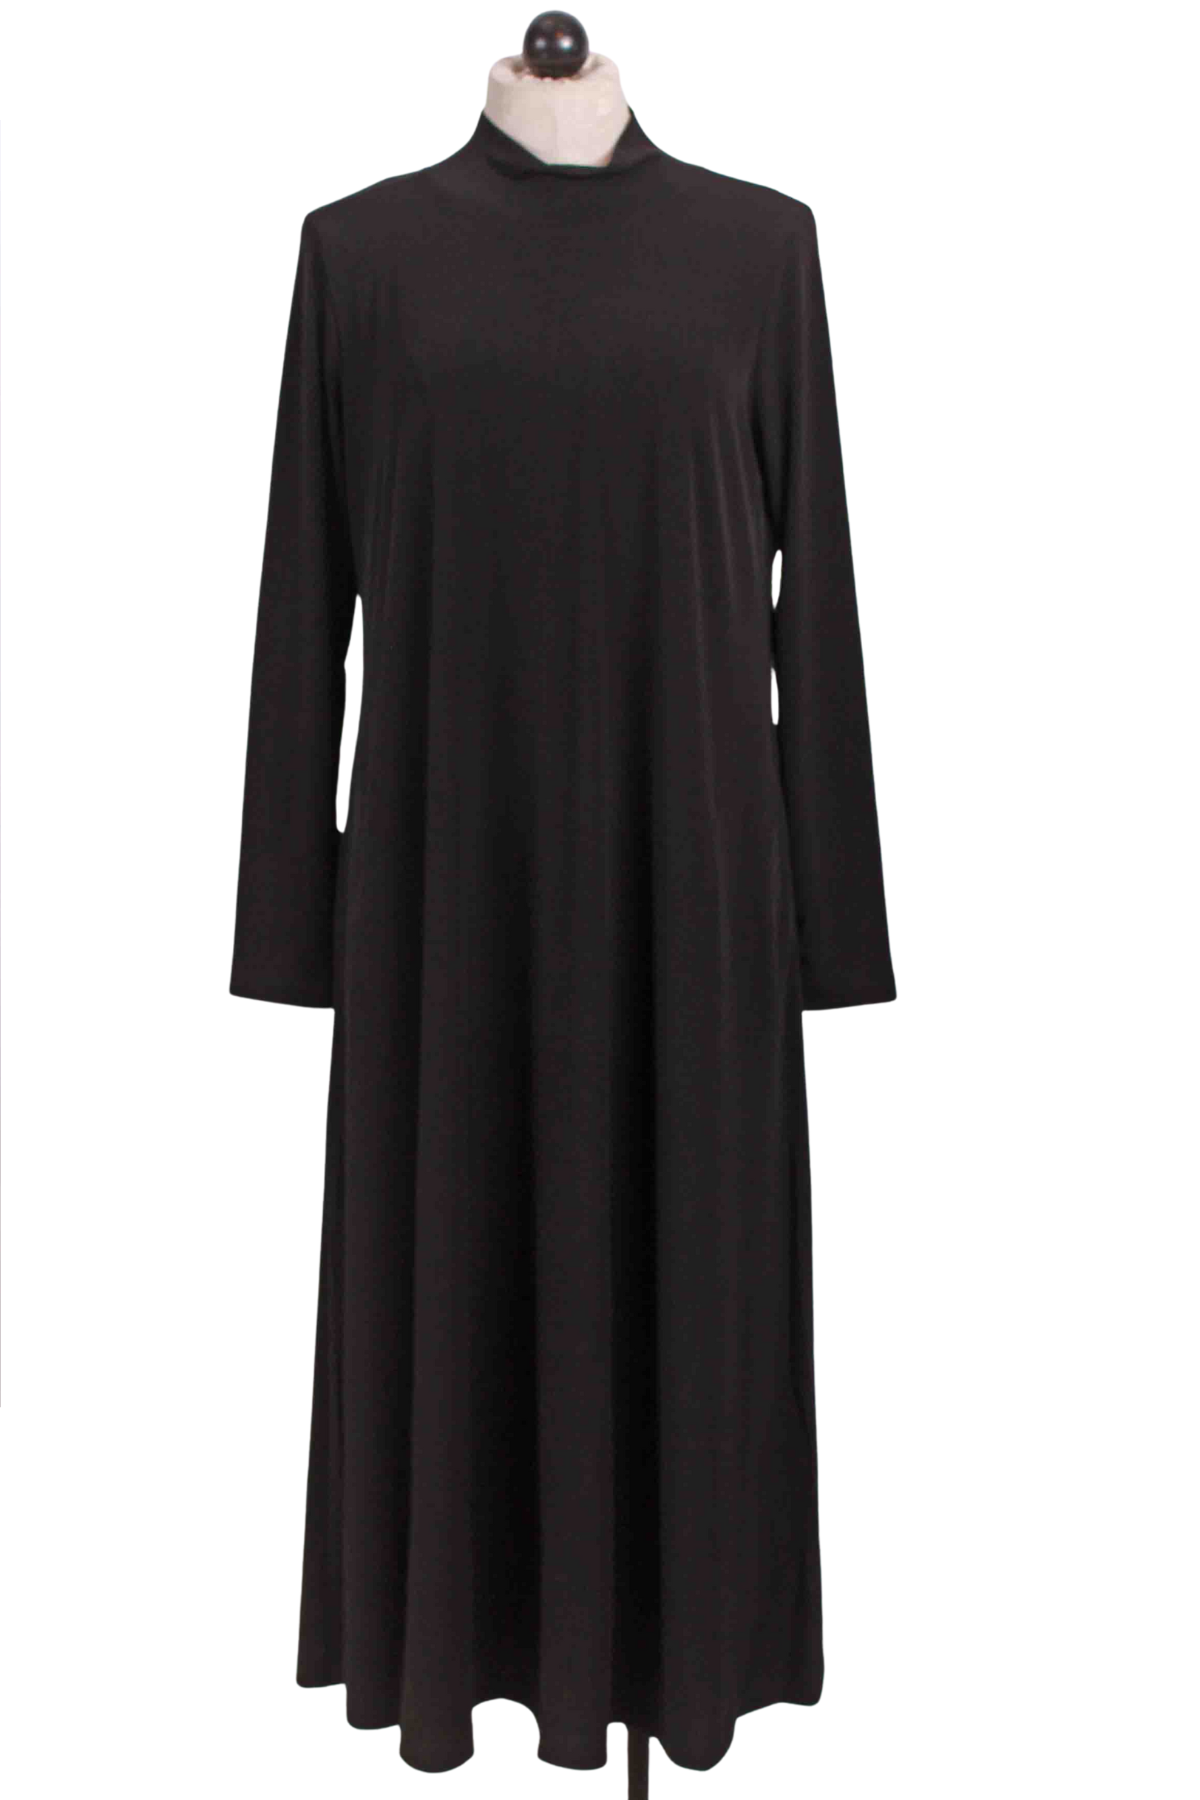 Black A Line Jersey Knit Dress by Alembika